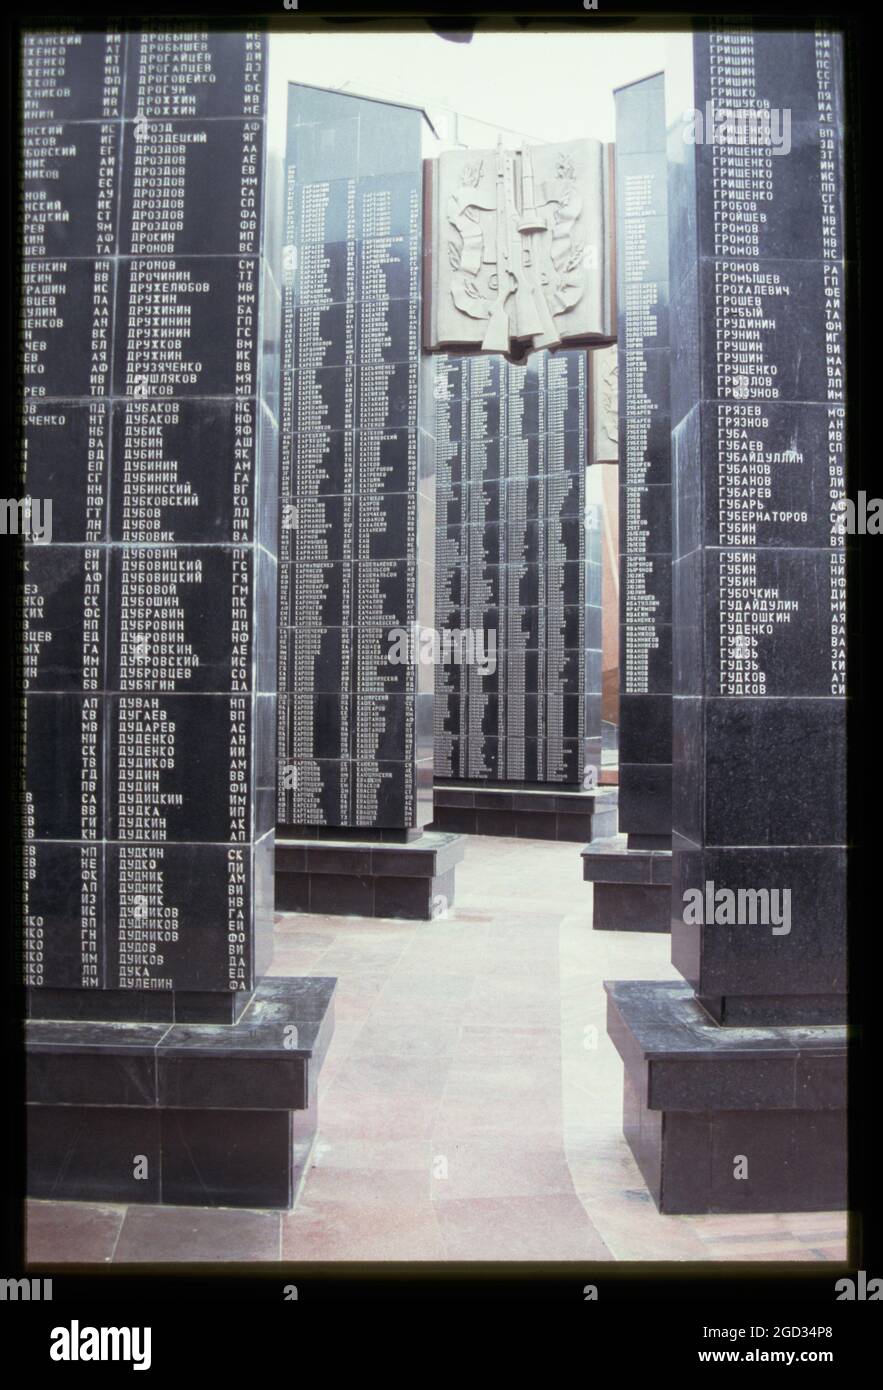 Denkmal für diejenigen, die nicht aus dem Großen Vaterlandskrieg zurückkamen, Chabarowsk, Russland; 2002 Stockfoto